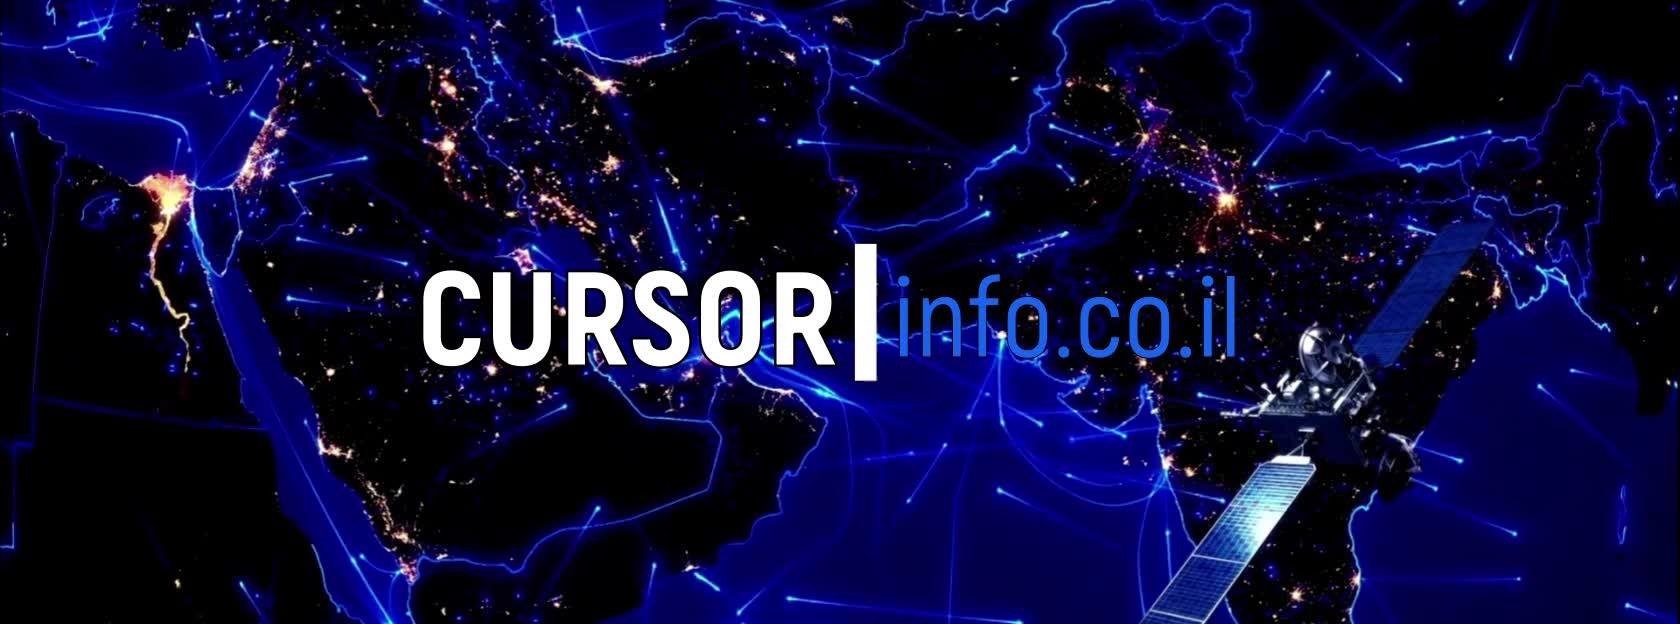 Cursor Info